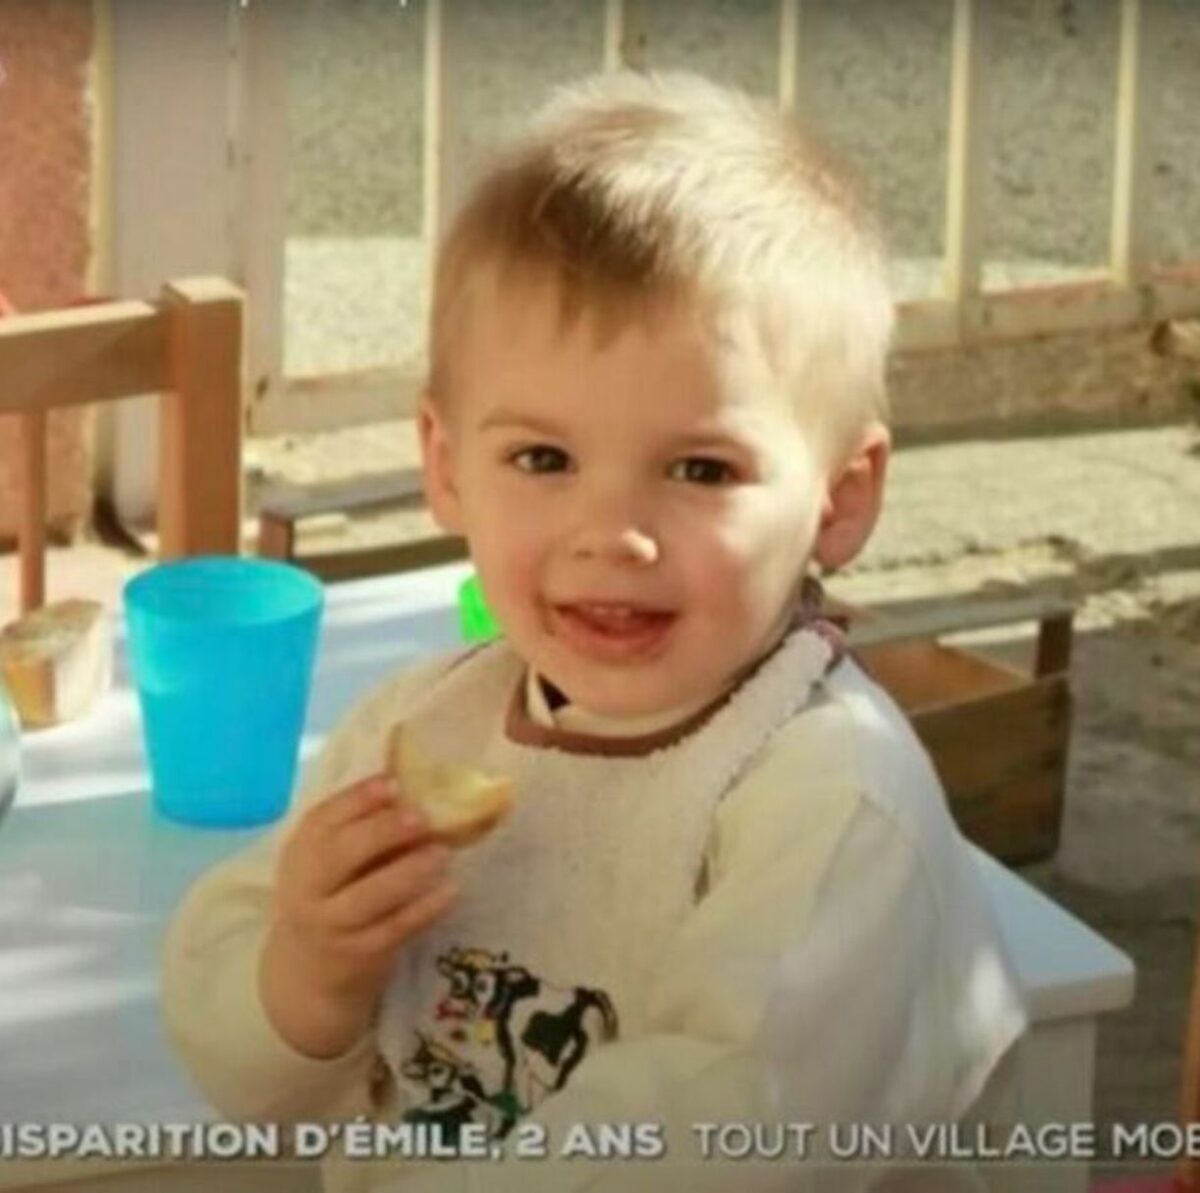 L’ipotesi choc su Emile, il bimbo scomparso in Francia